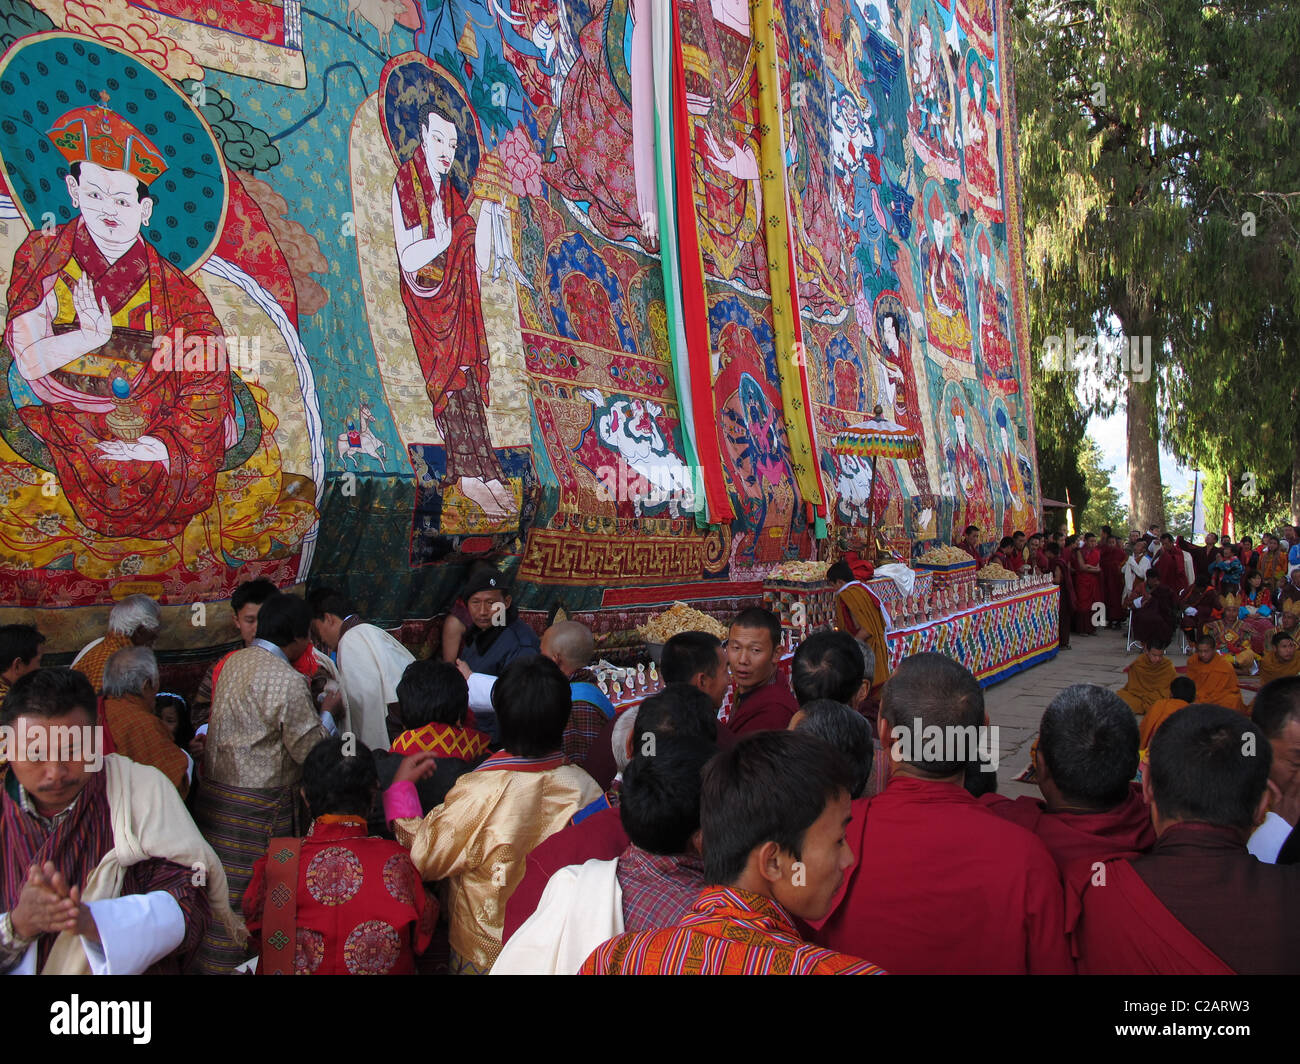 Huge thanka at the Talo festival, Talo monastery, Bhutan Stock Photo